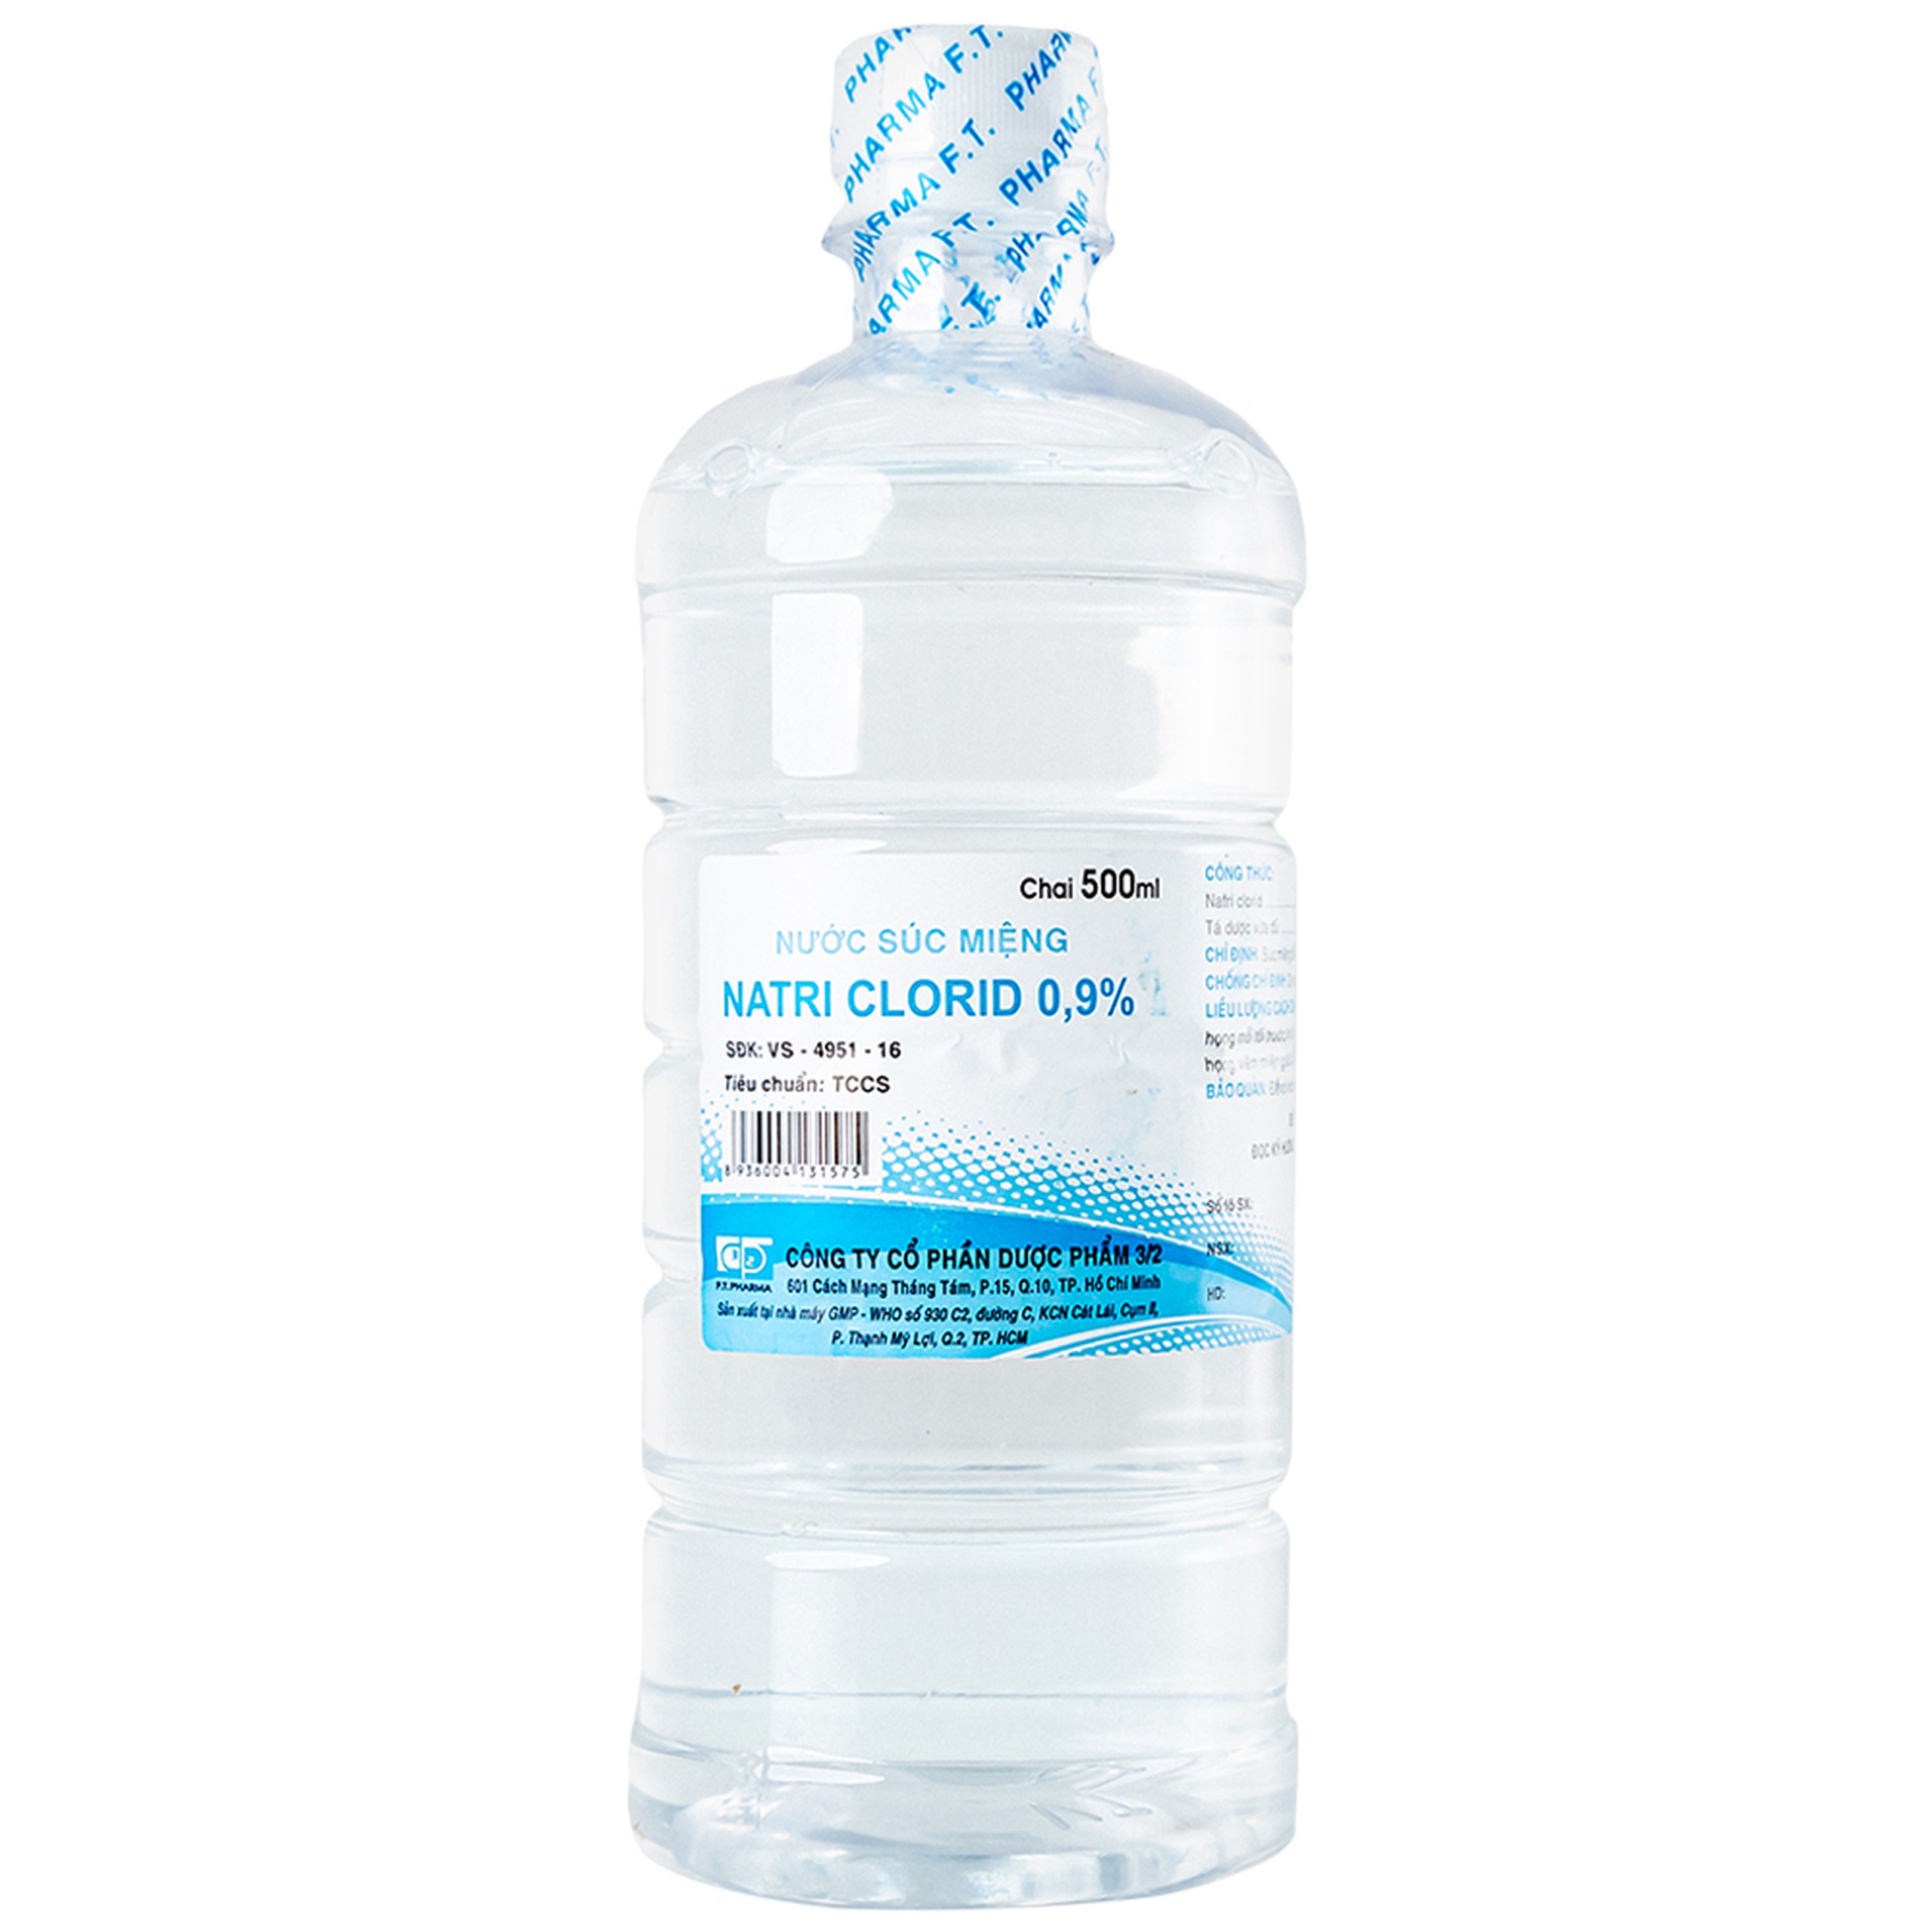 Nước súc miệng Natri Clorid 0.9% Dược Phẩm 3/2 vệ sinh răng, miệng, họng (500ml)